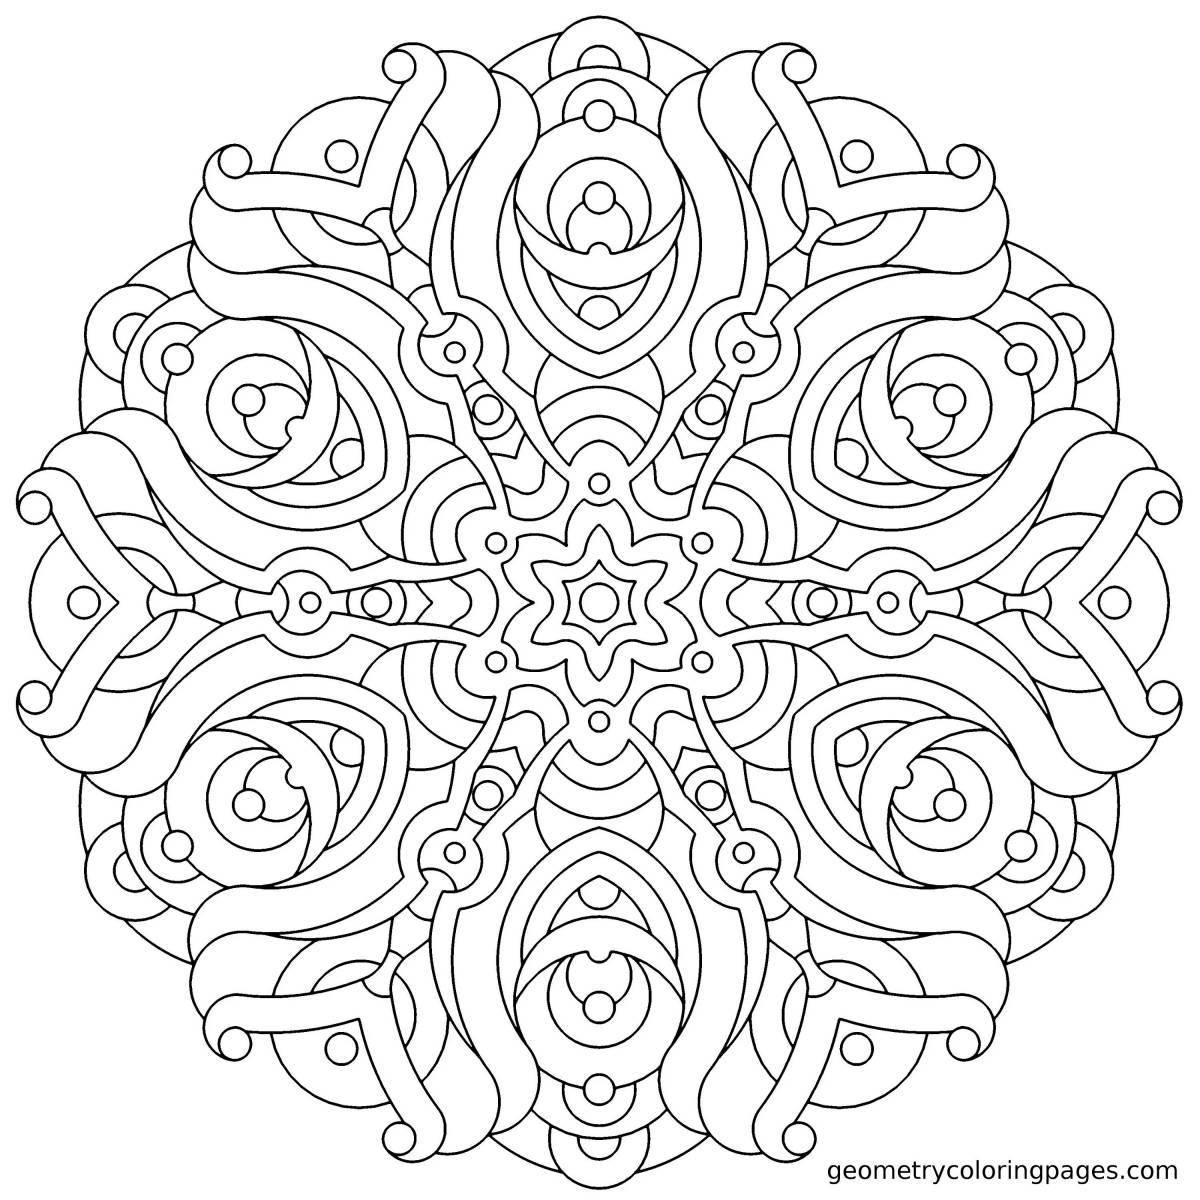 Detailed fractal coloring